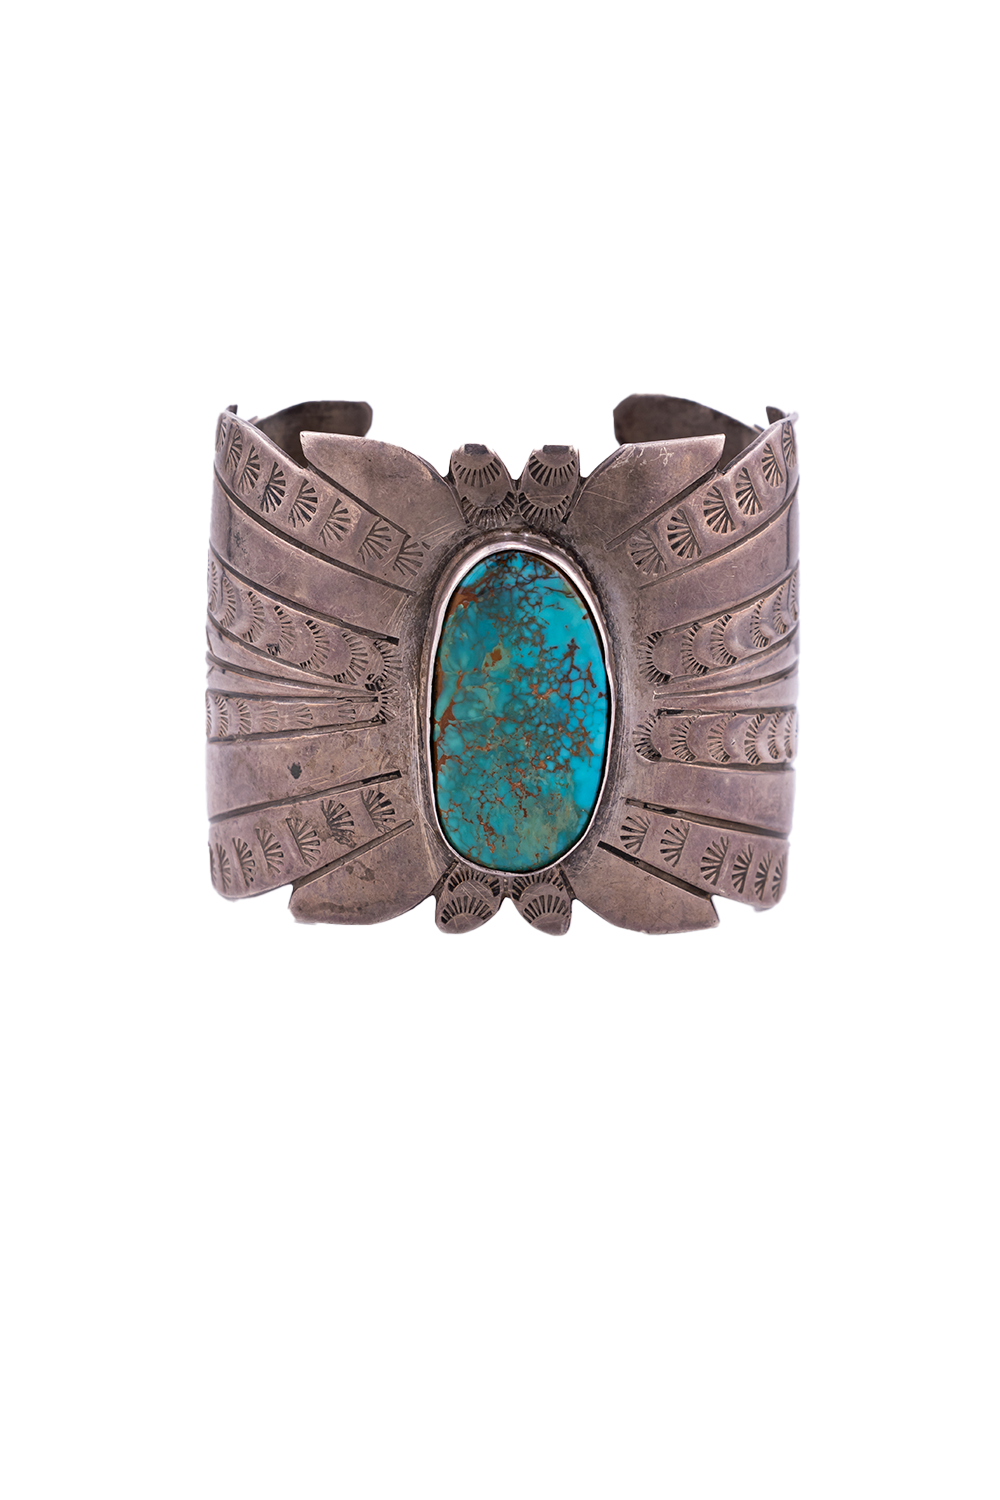 Hallmarked Navajo Cuff Bracelet